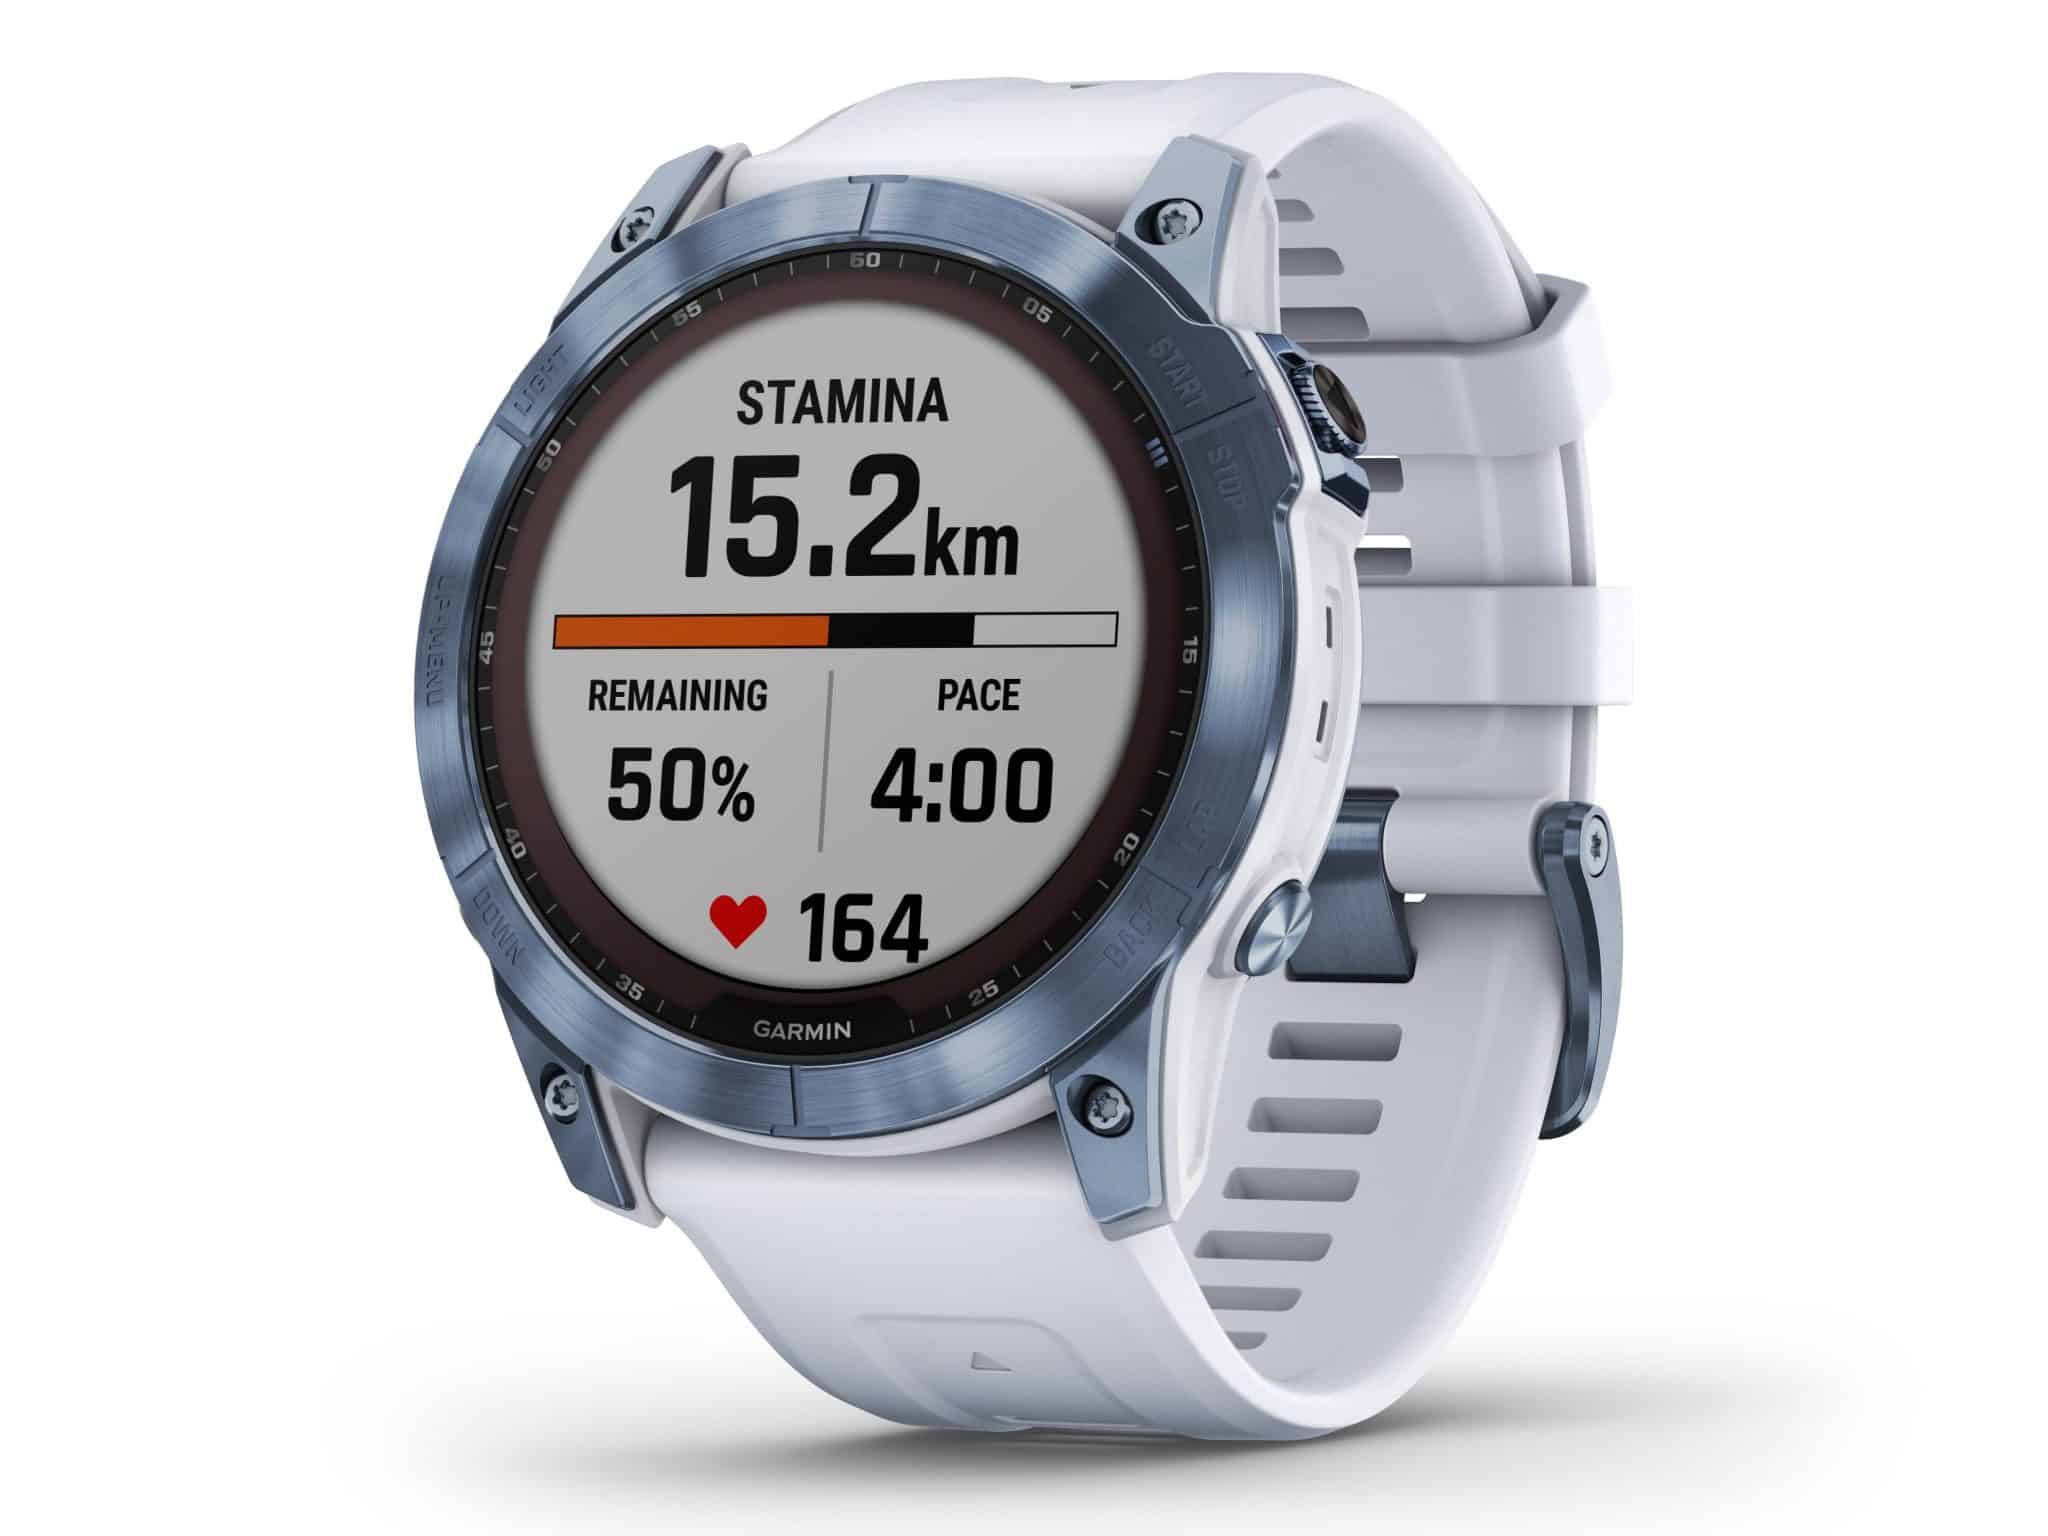 Schicke Sport Smartwatch: Die Garmin epix 2 ist eine Highend-Outdoor-Smartwatch für ambitionierte Sportler:innen. Foto: Garmin Deutschland GmbH